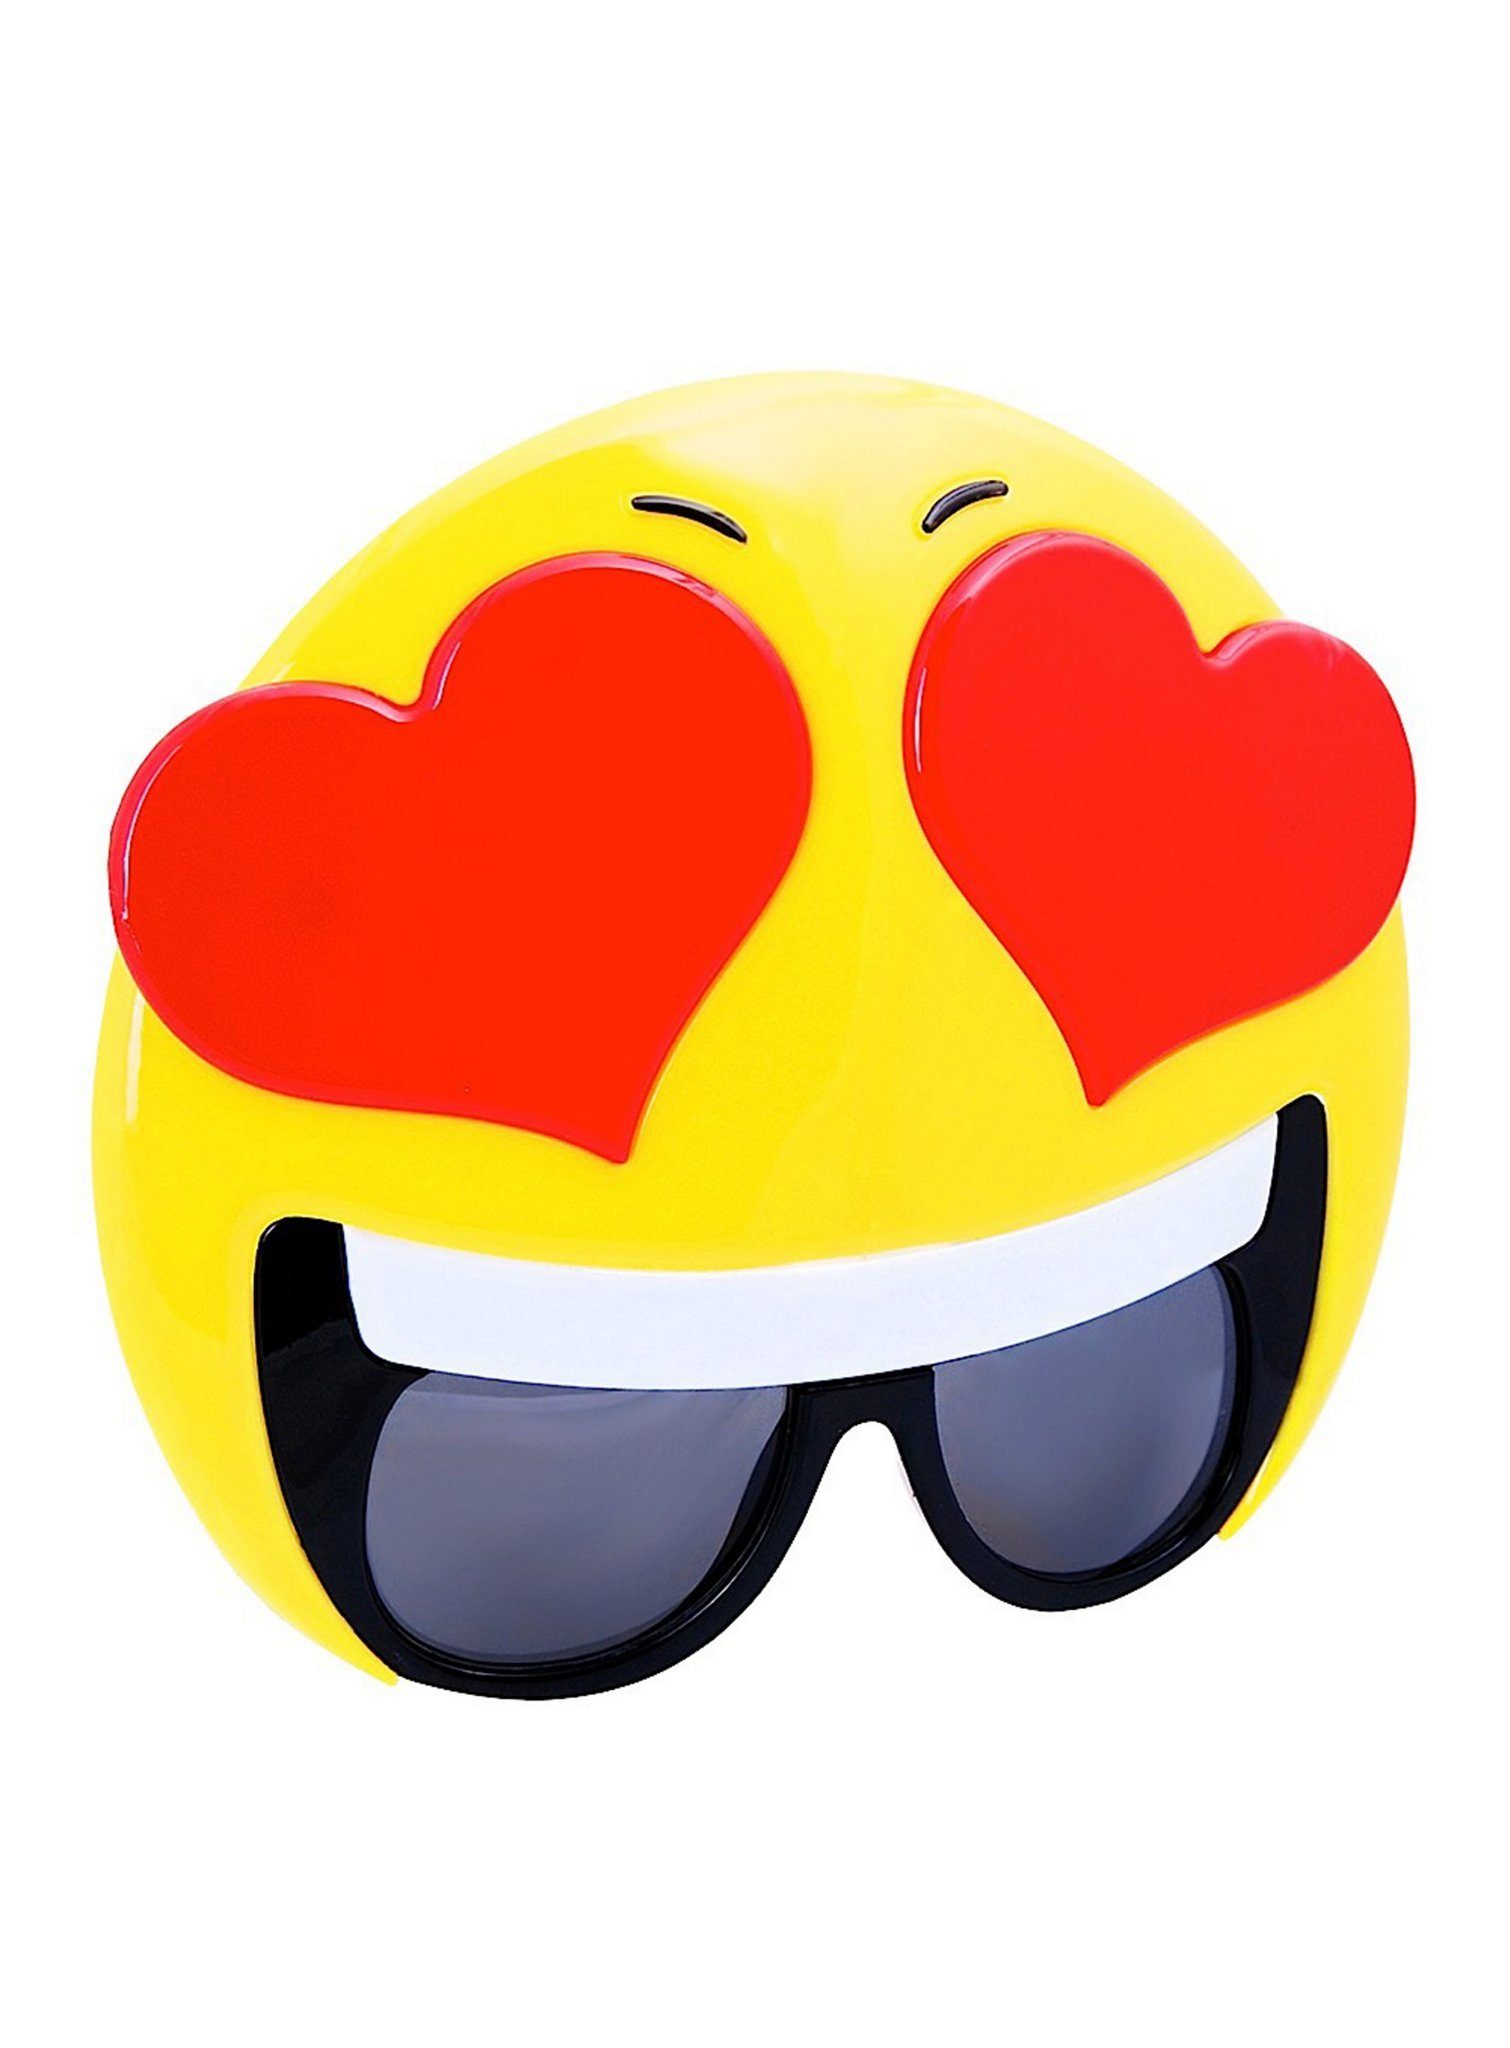 Sun Staches Kostüm Love Partybrille, <3 Ein Blick zum Verlieben: lustige Funbrille im Emoticon-Design <3